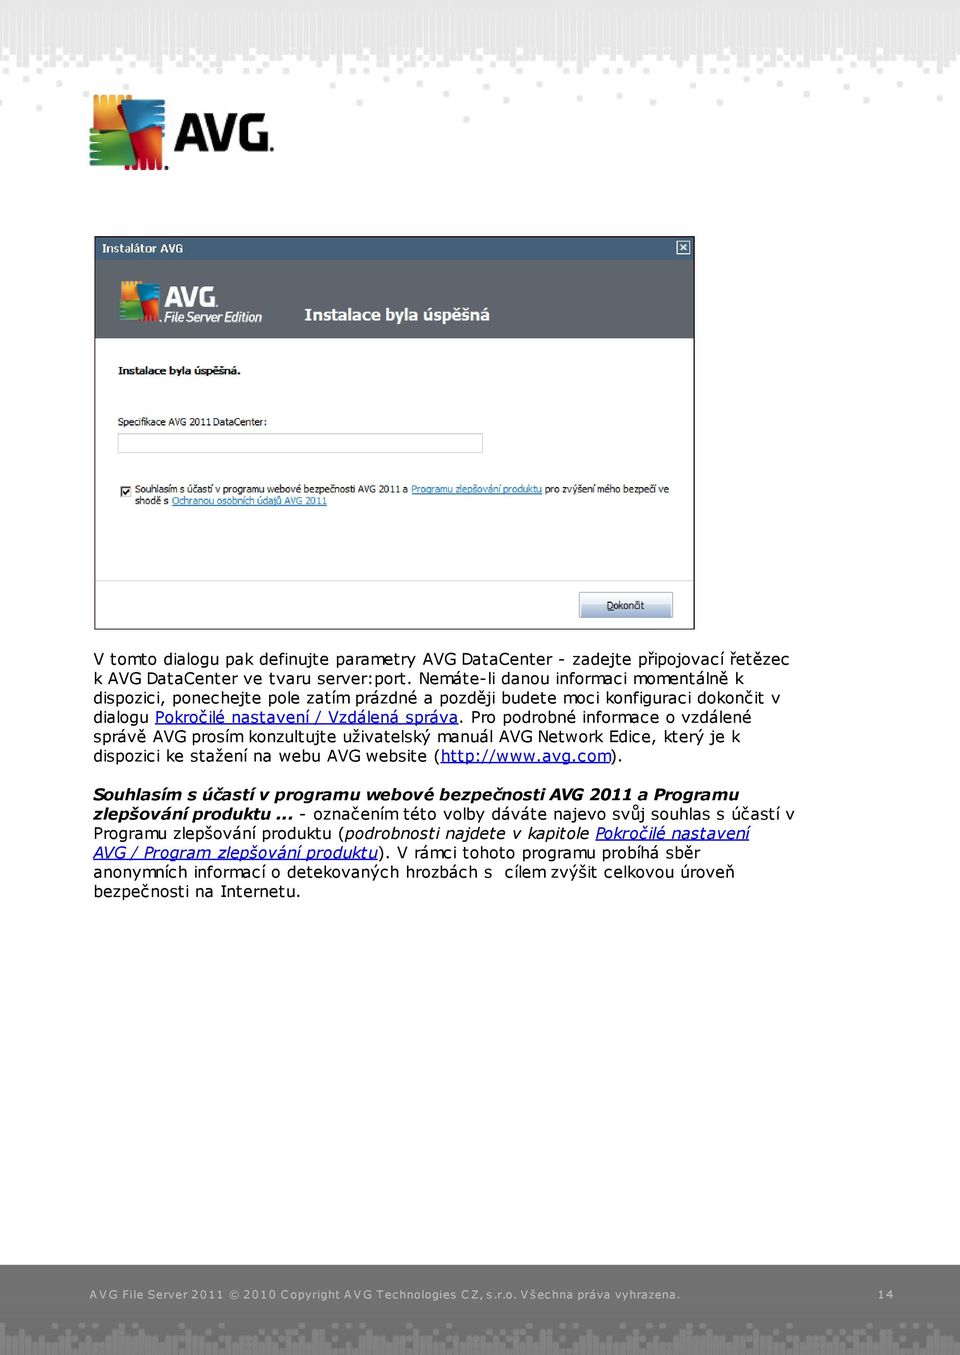 Pro podrobné informace o vzdálené správě AVG prosím konzultujte uživatelský manuál AVG Network Edice, který je k dispozici ke stažení na webu AVG website (http://www.avg.com).